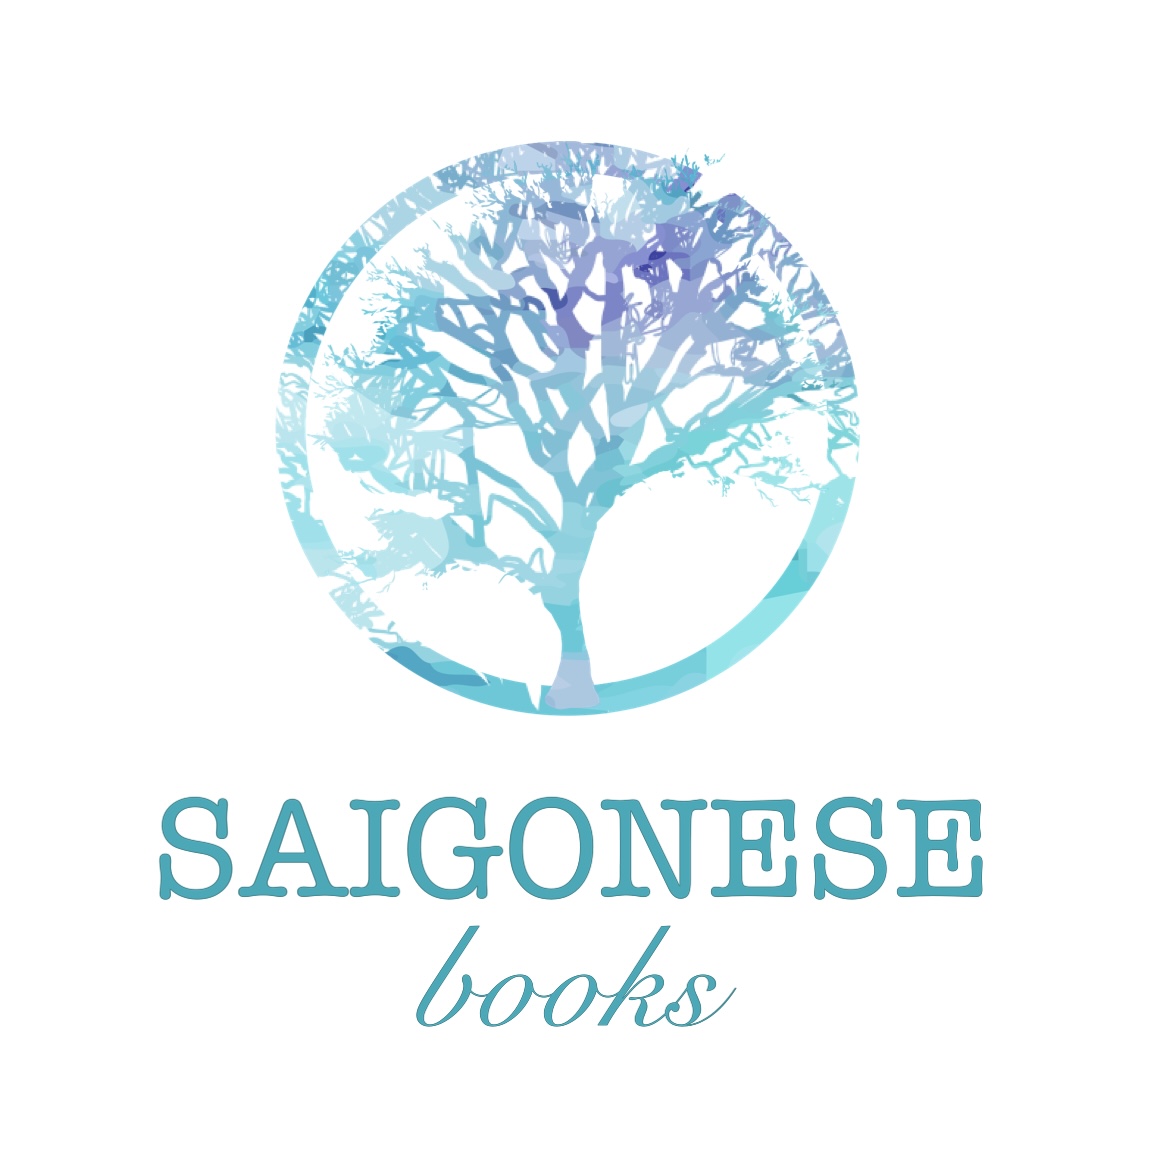 SAIGONESE books